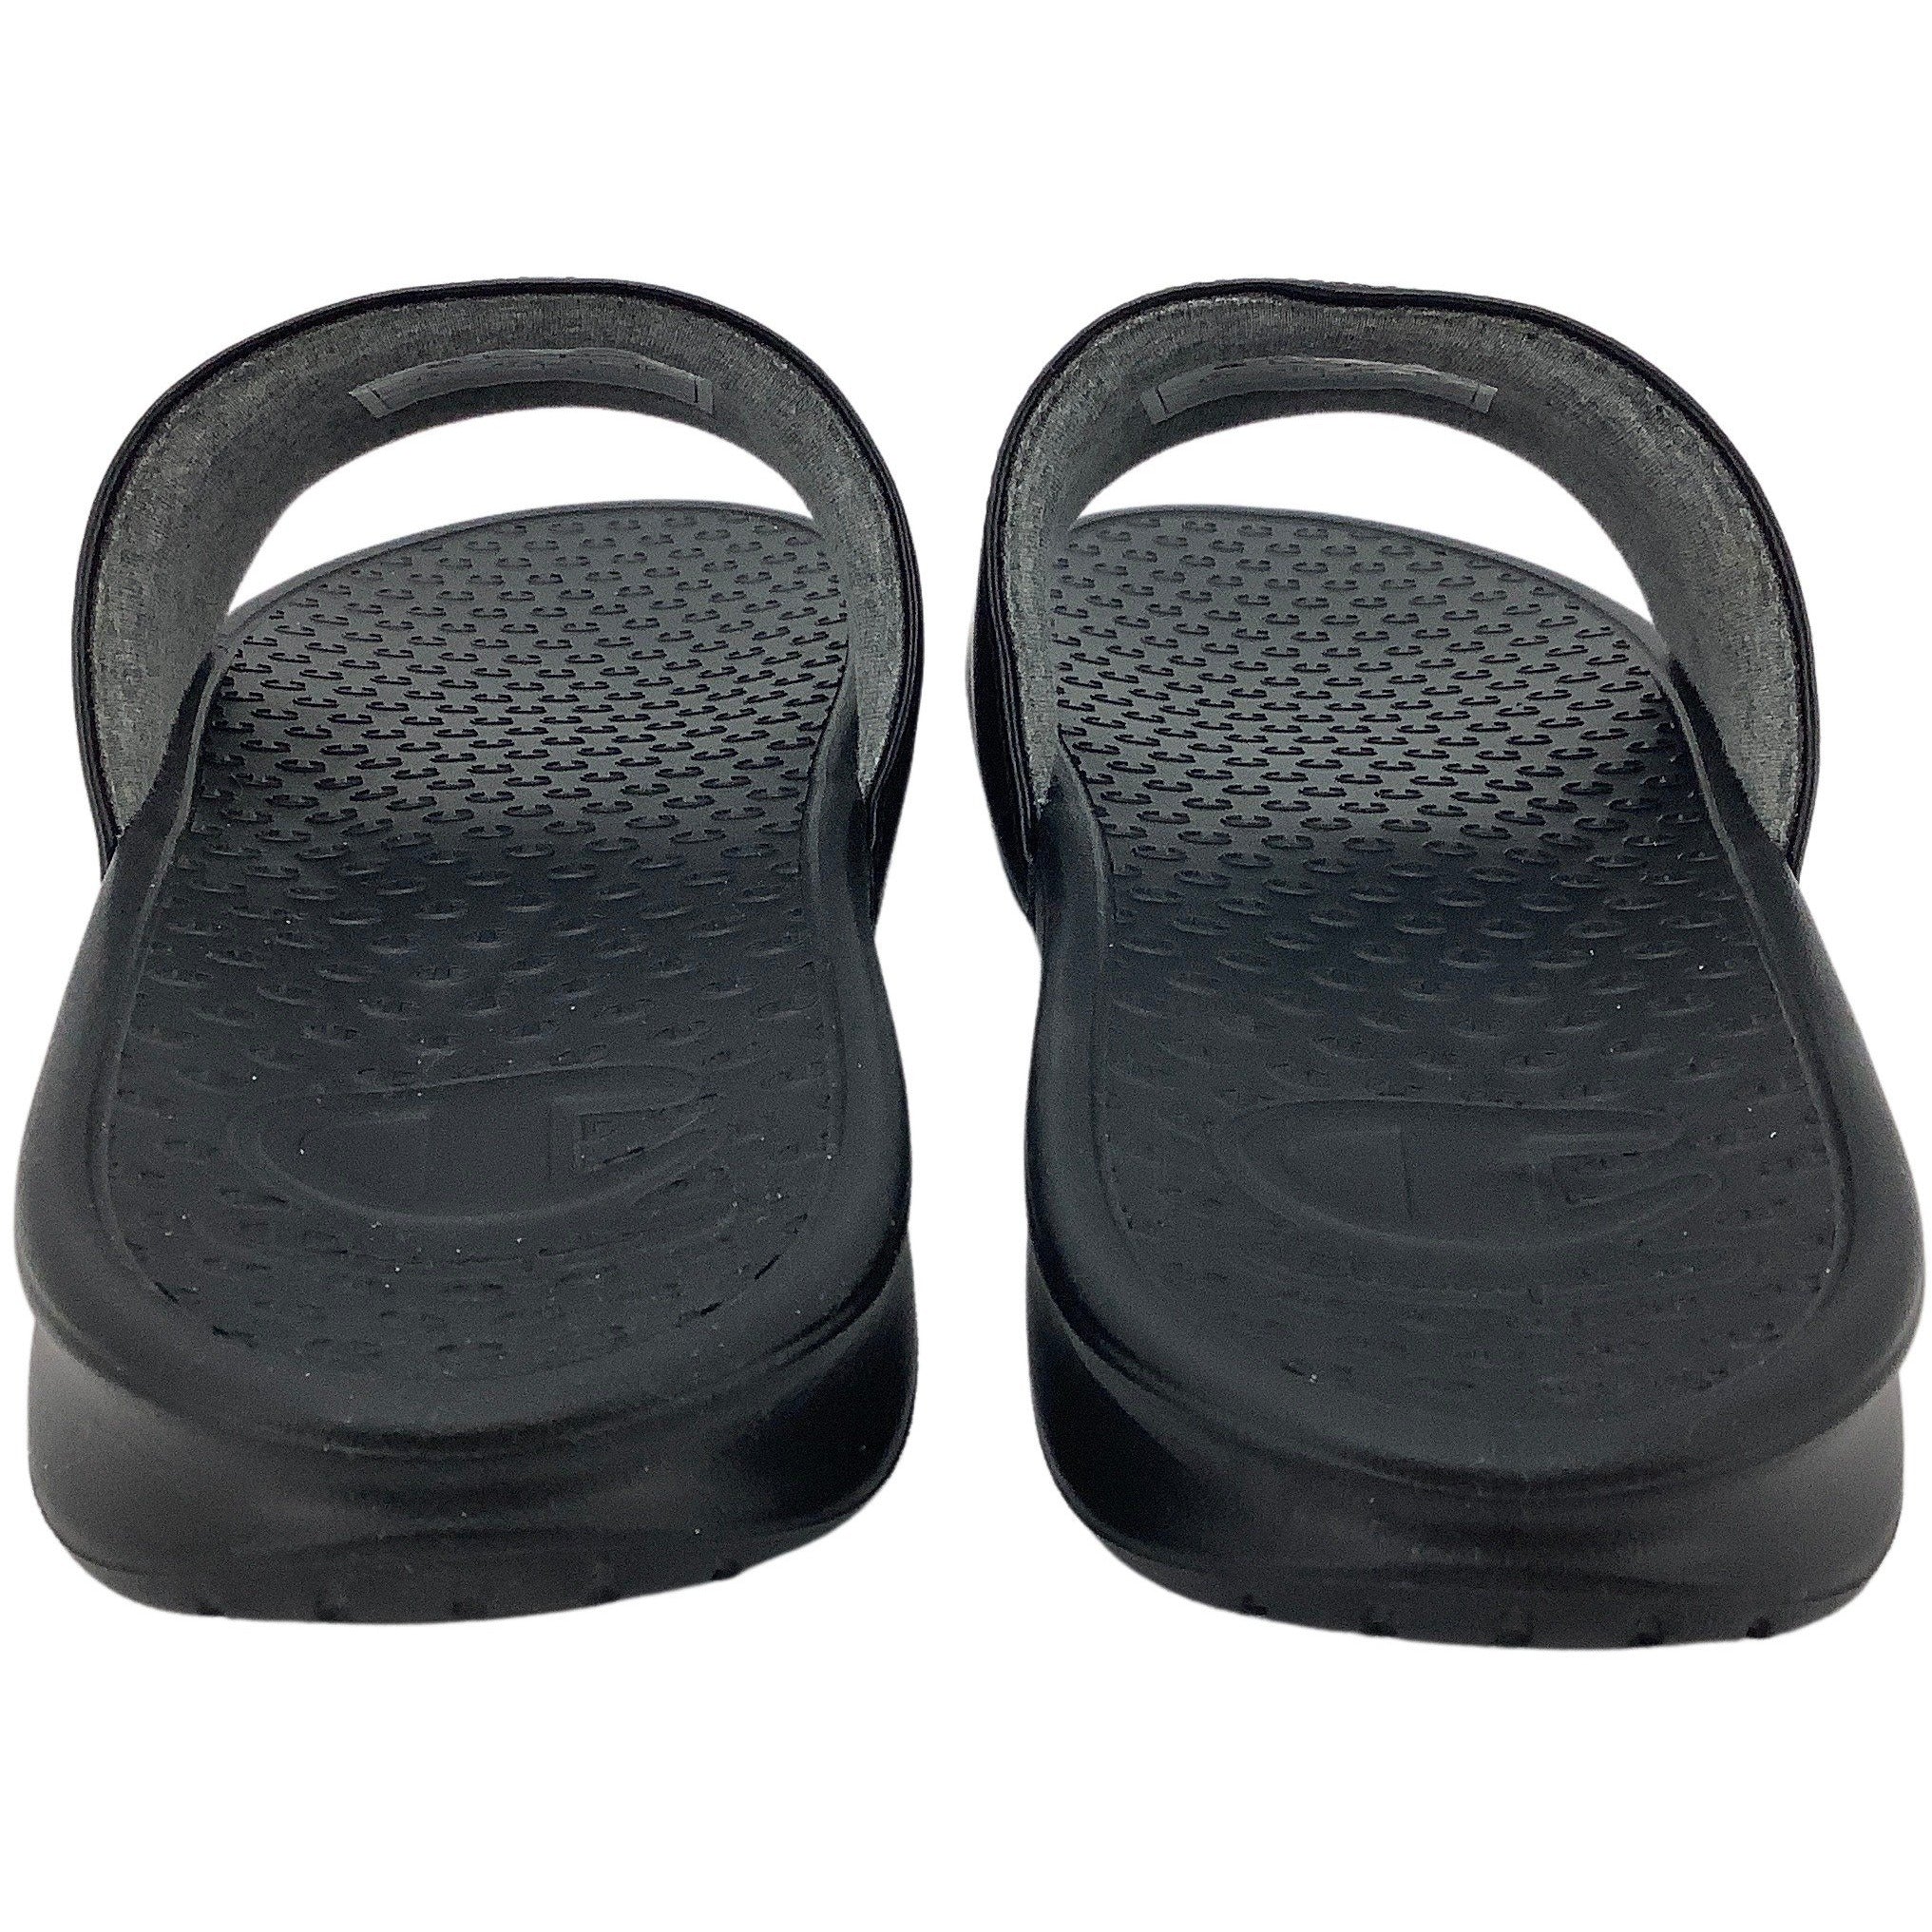 Champion Men's Flip Flops: Super Slide: Slip On Shoes: Size 13